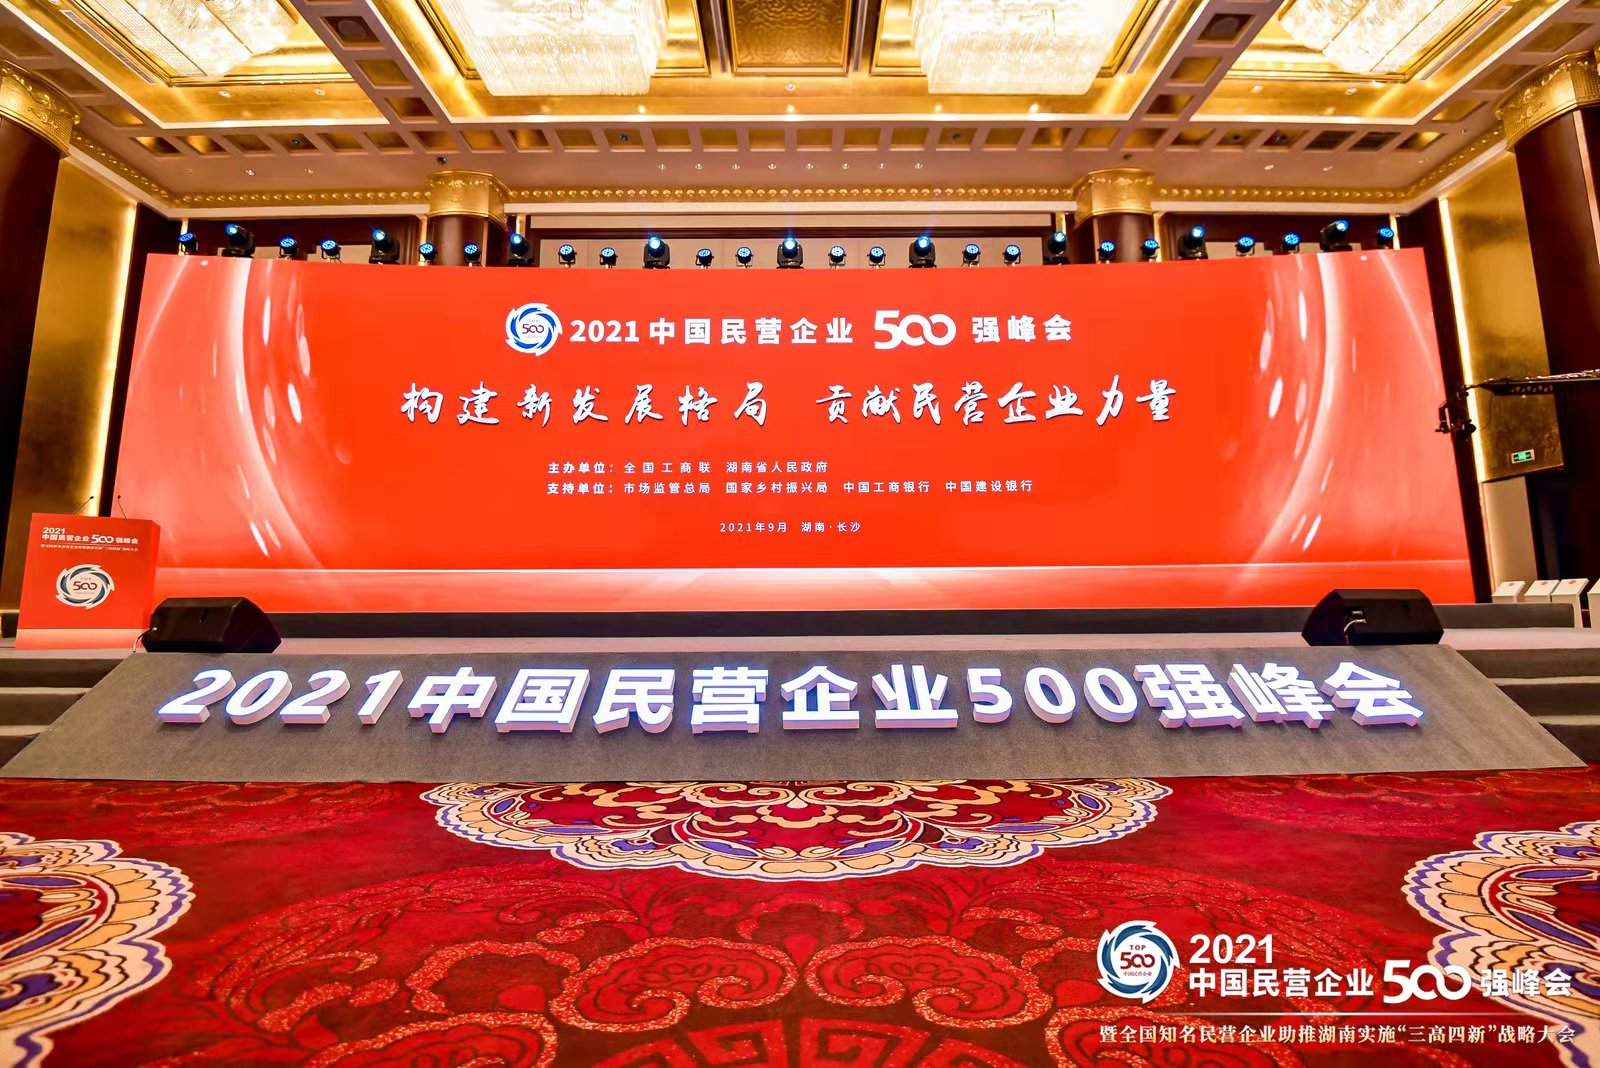 2021中國民營企業500強榜單發佈，山東澳门太阳集团實業集團位列第226位